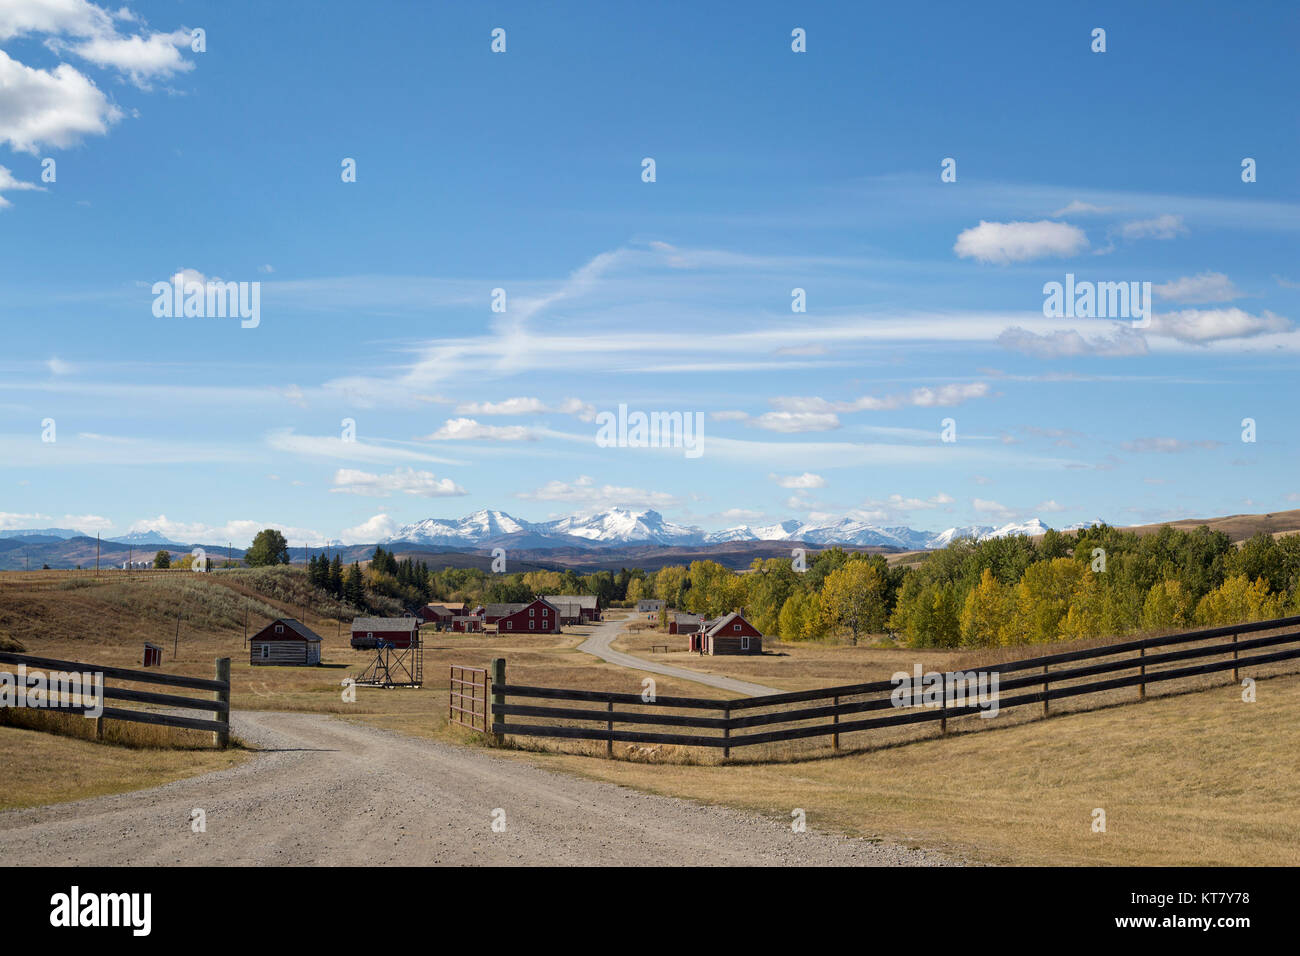 Bar U Ranch National Historic Site, eine funktionierende Ranch in den Rocky Mountain Foothills von Alberta, Kanada Stockfoto